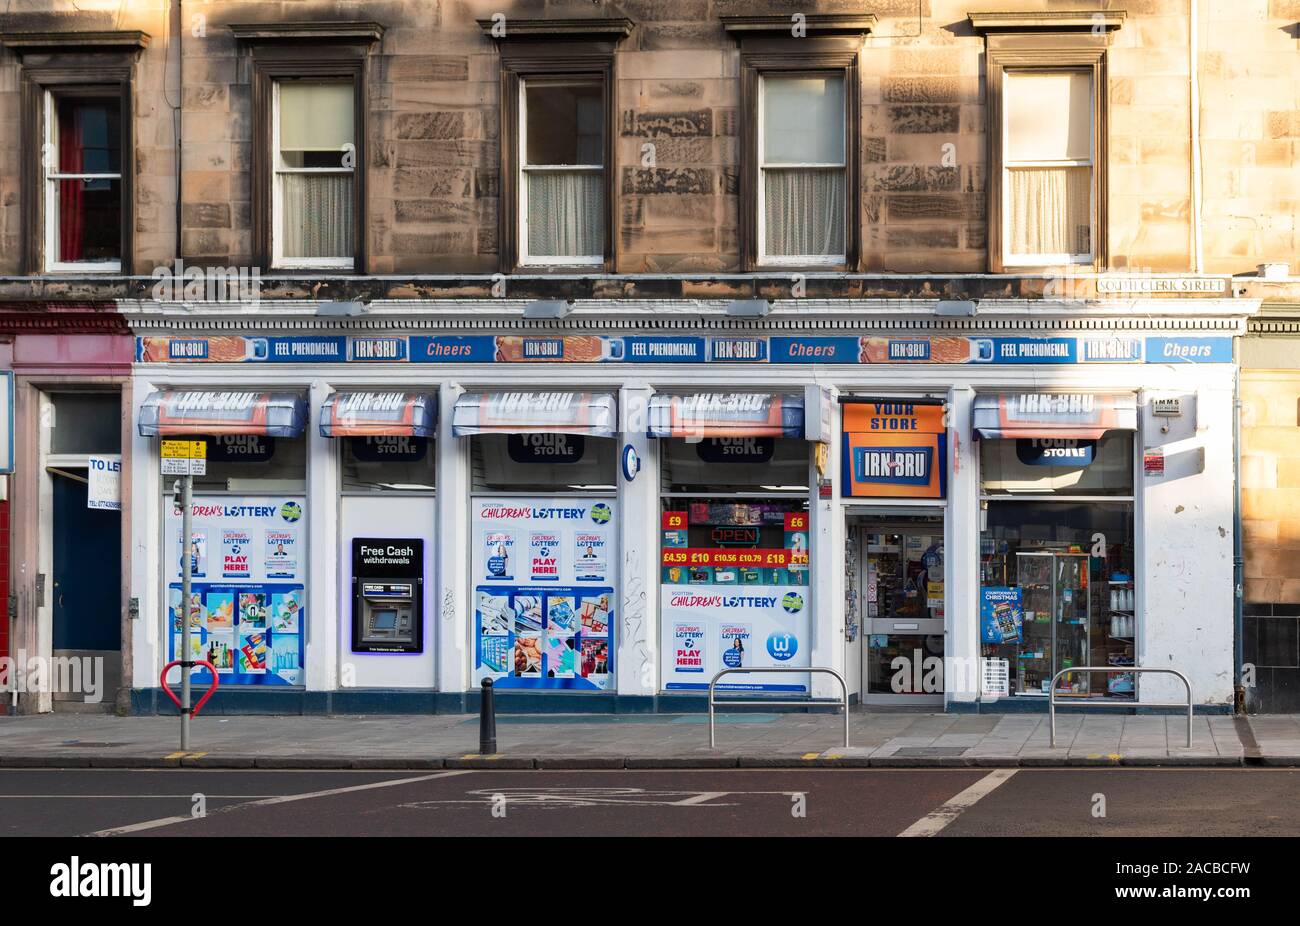 Irn Bru Werbung auf Convenience Store' Ihre Store', Edinburgh, Schottland, Großbritannien Stockfoto